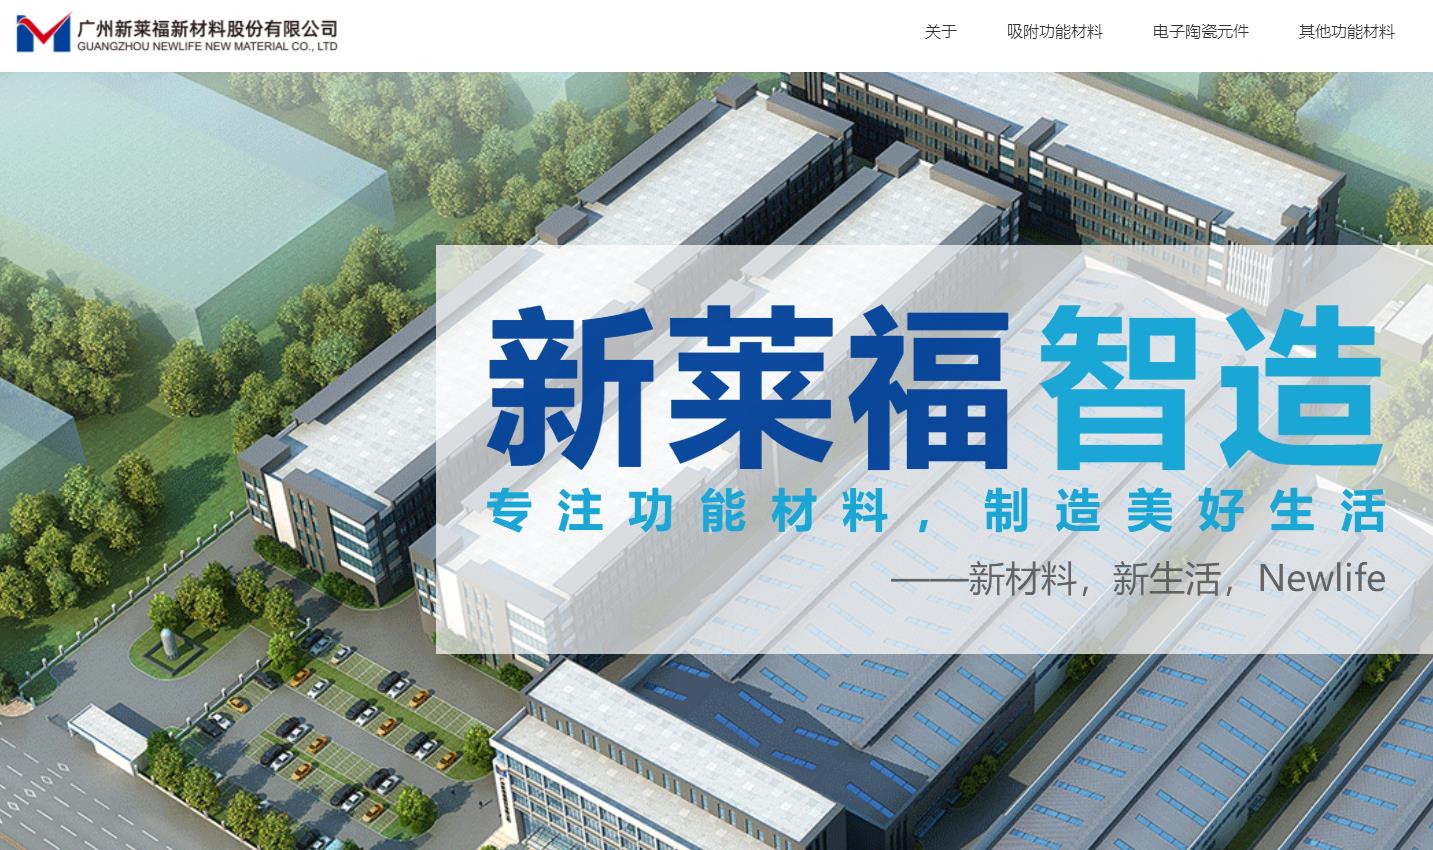 广州新莱福新材料股份有限公司研发中心升级建设项目总投资 15000.0万元